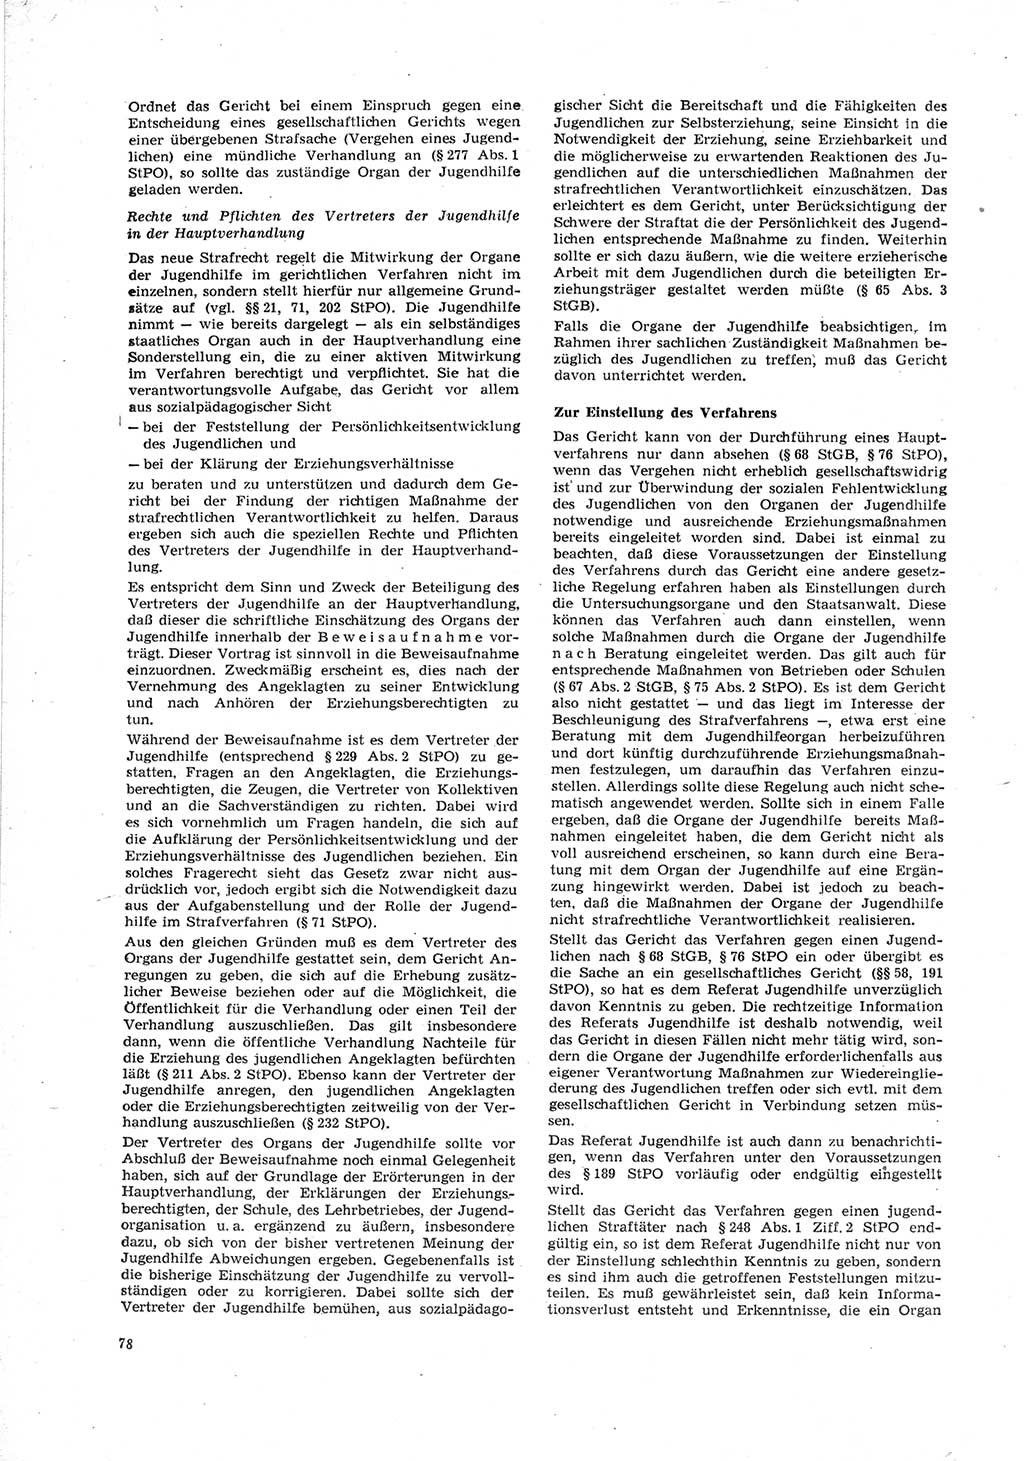 Neue Justiz (NJ), Zeitschrift für Recht und Rechtswissenschaft [Deutsche Demokratische Republik (DDR)], 23. Jahrgang 1969, Seite 78 (NJ DDR 1969, S. 78)